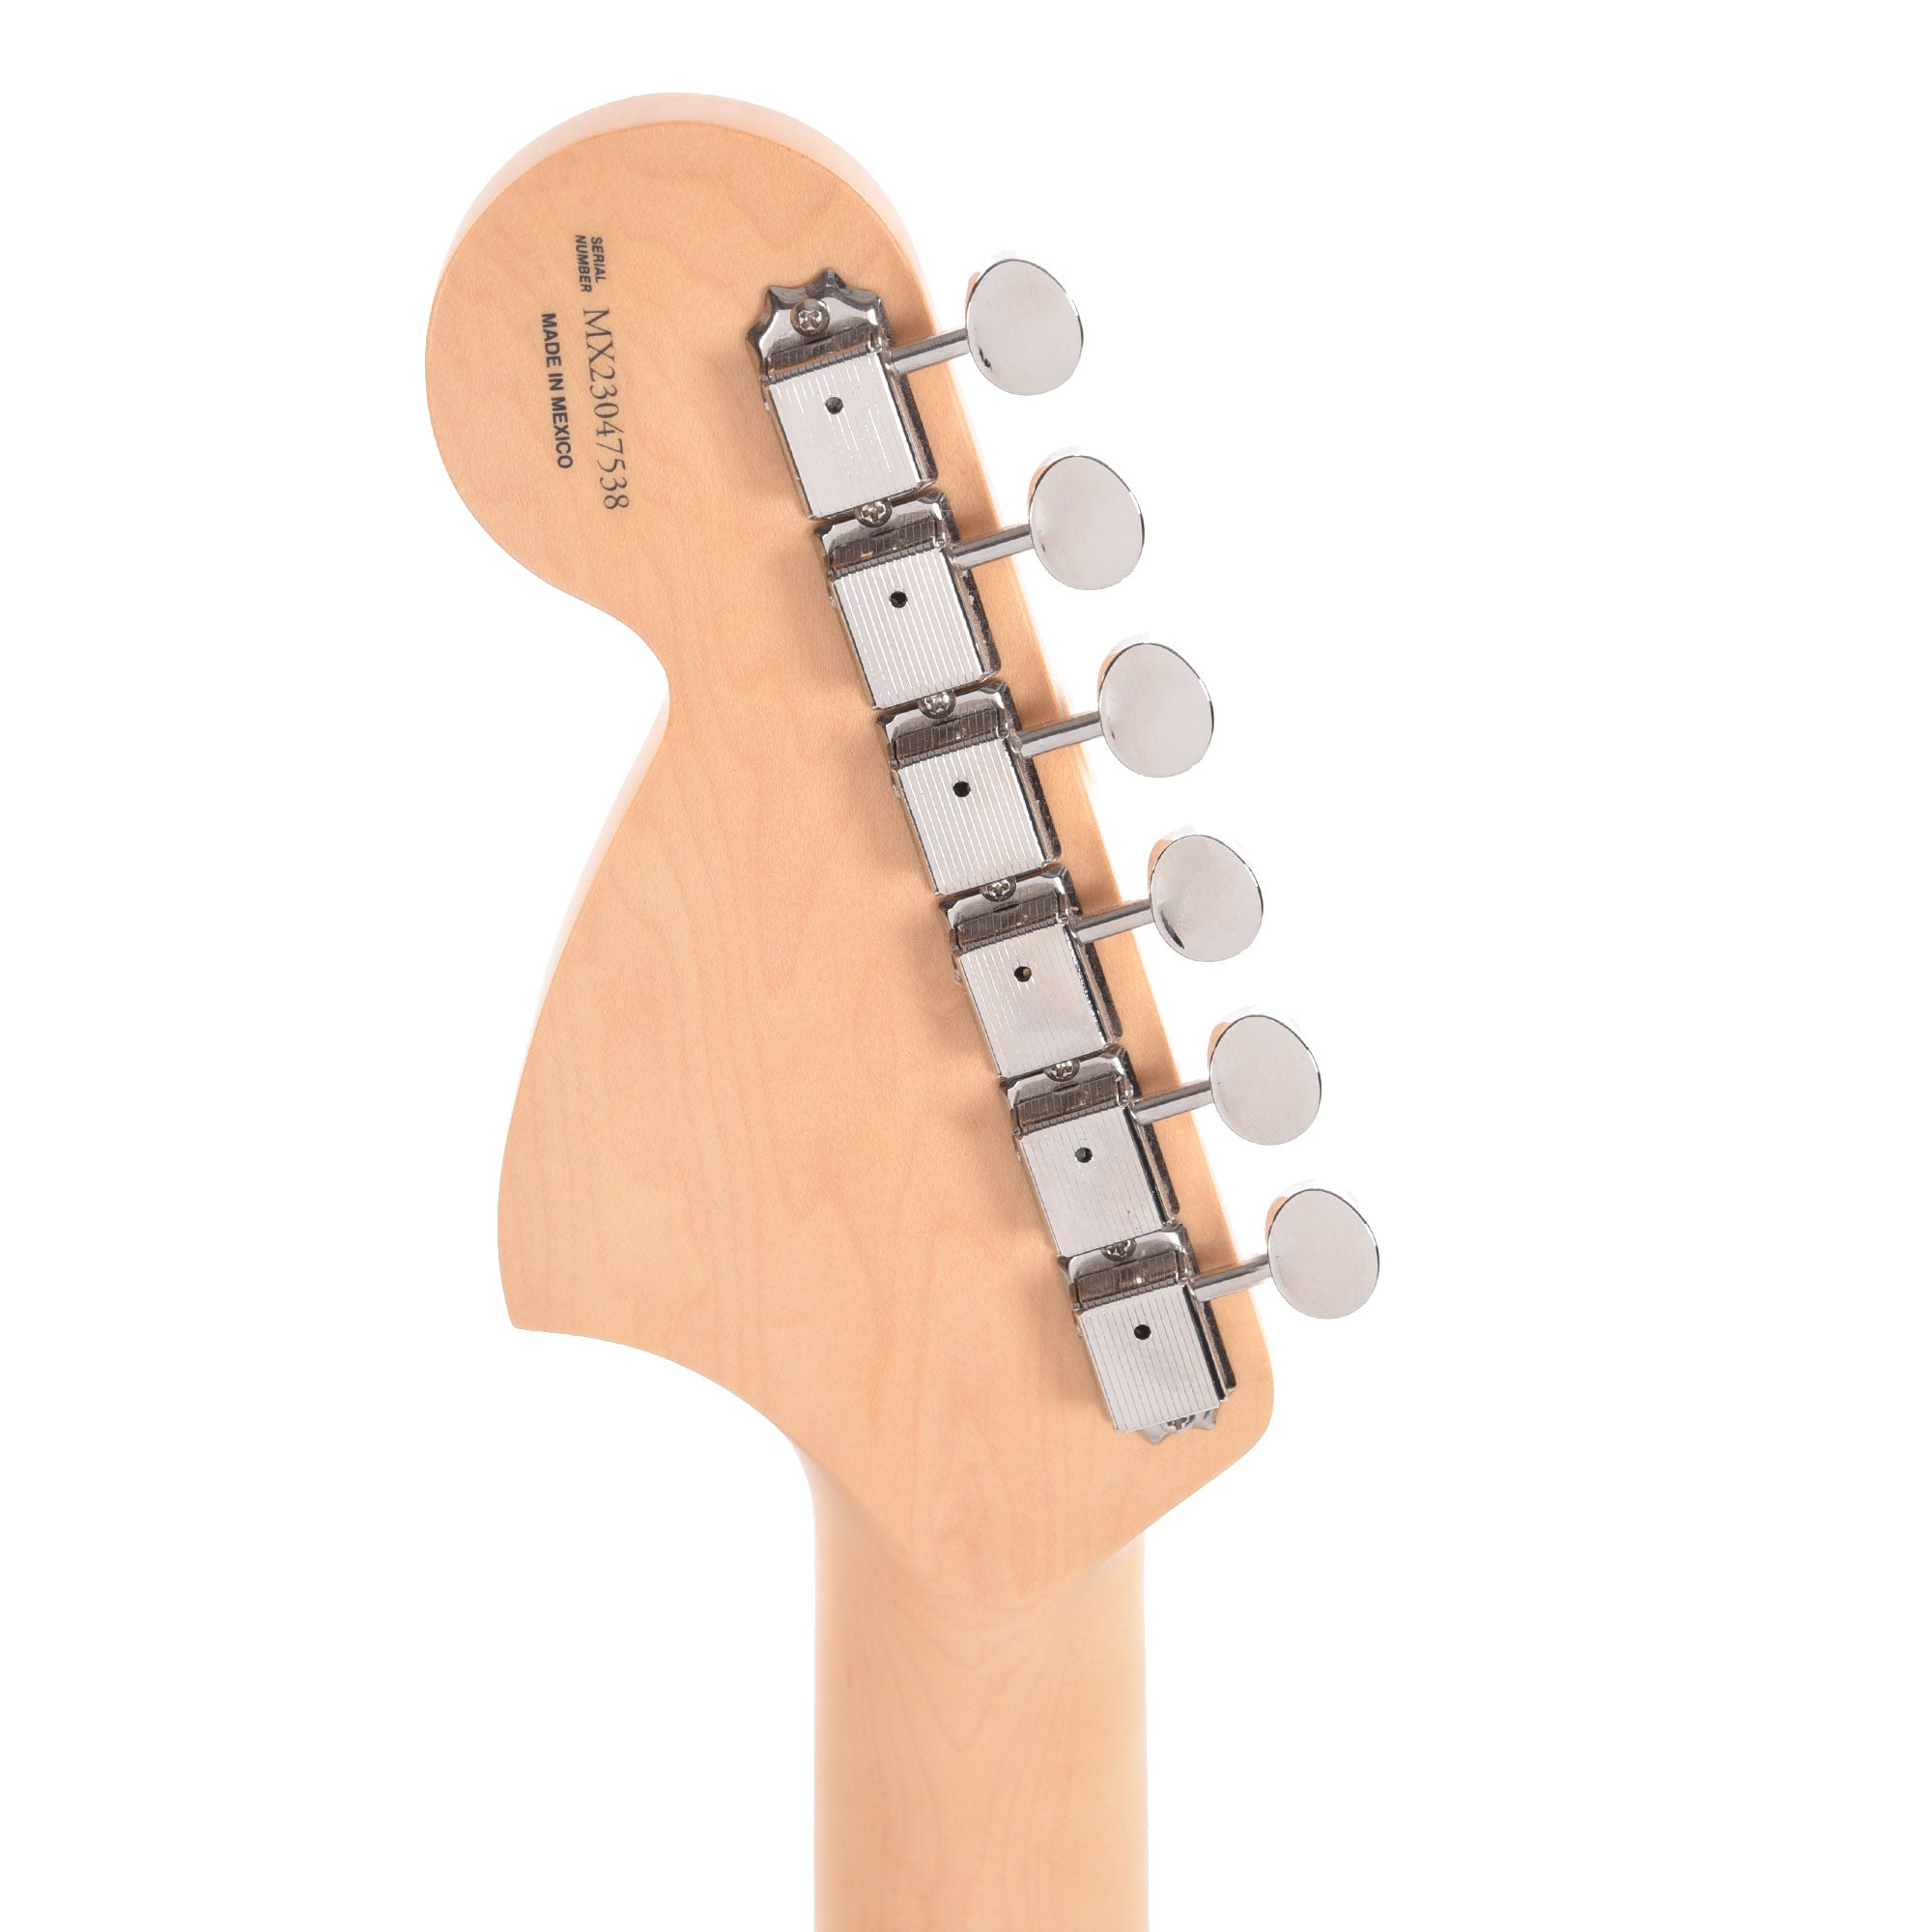 Fender Artist Limited Edition Tom DeLonge Stratocaster Daphne Blue